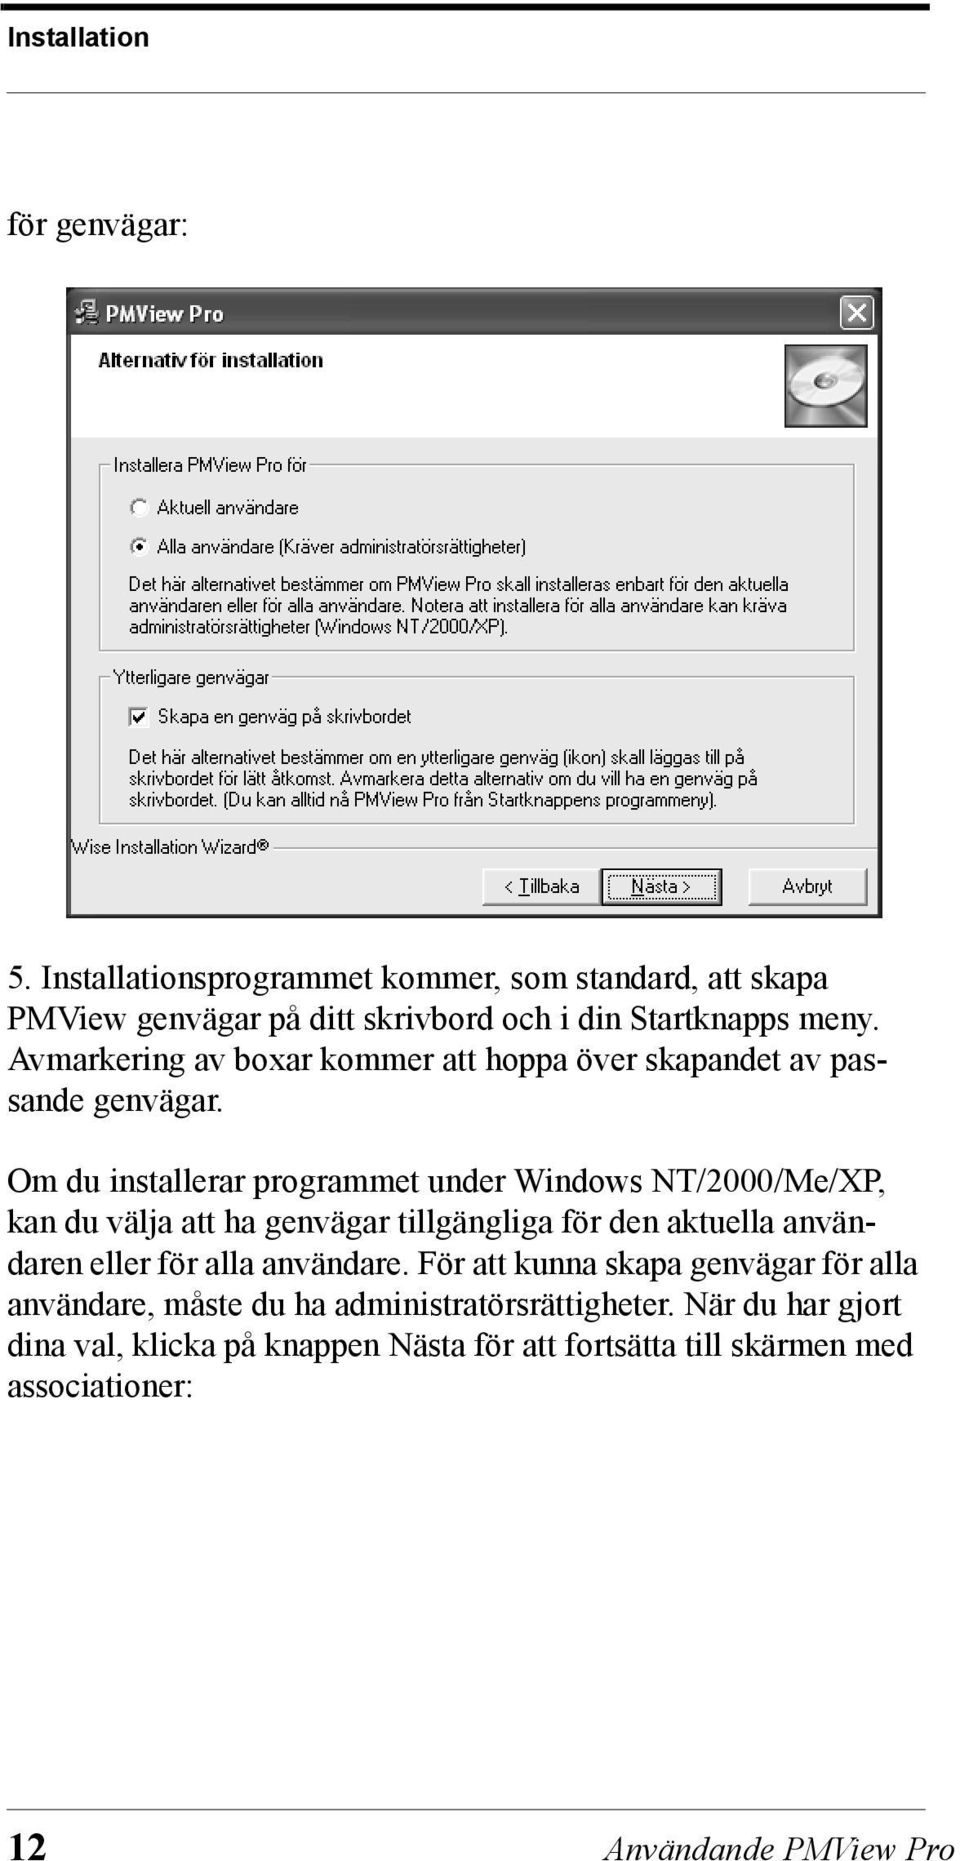 Om du installerar programmet under Windows NT/2000/Me/XP, kan du välja att ha genvägar tillgängliga för den aktuella användaren eller för alla